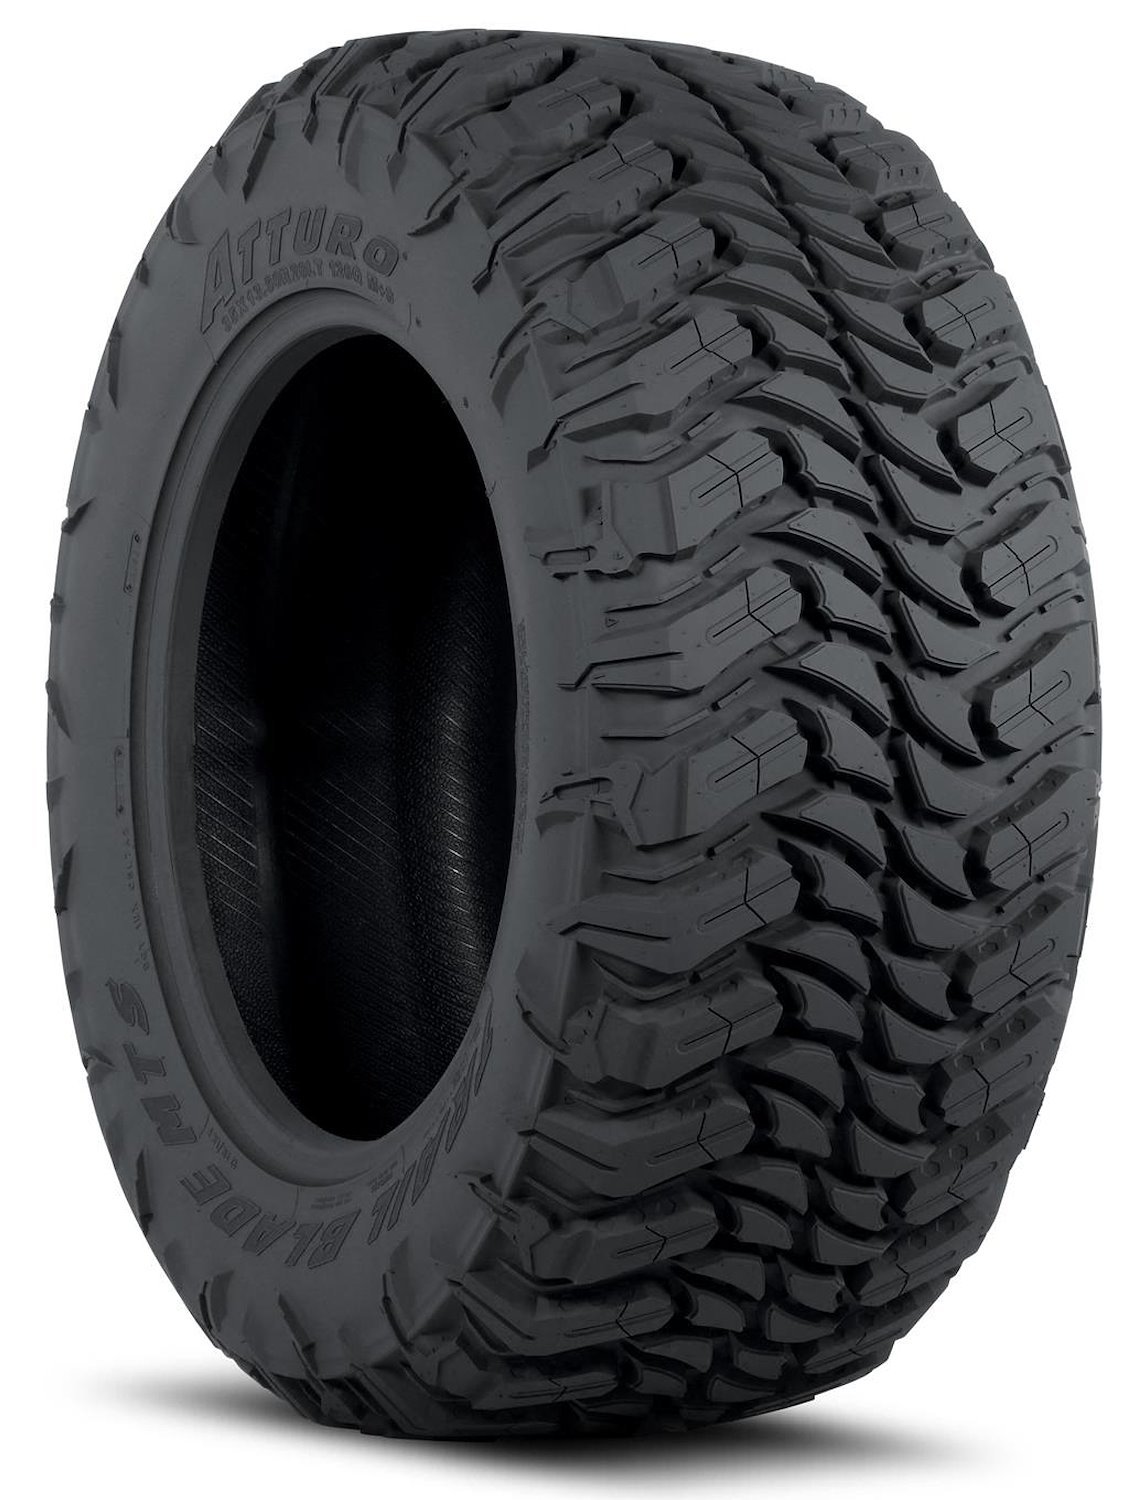 TBMS-LK5T2MA Trail Blade MTS Tire, 35x12.50R18LT